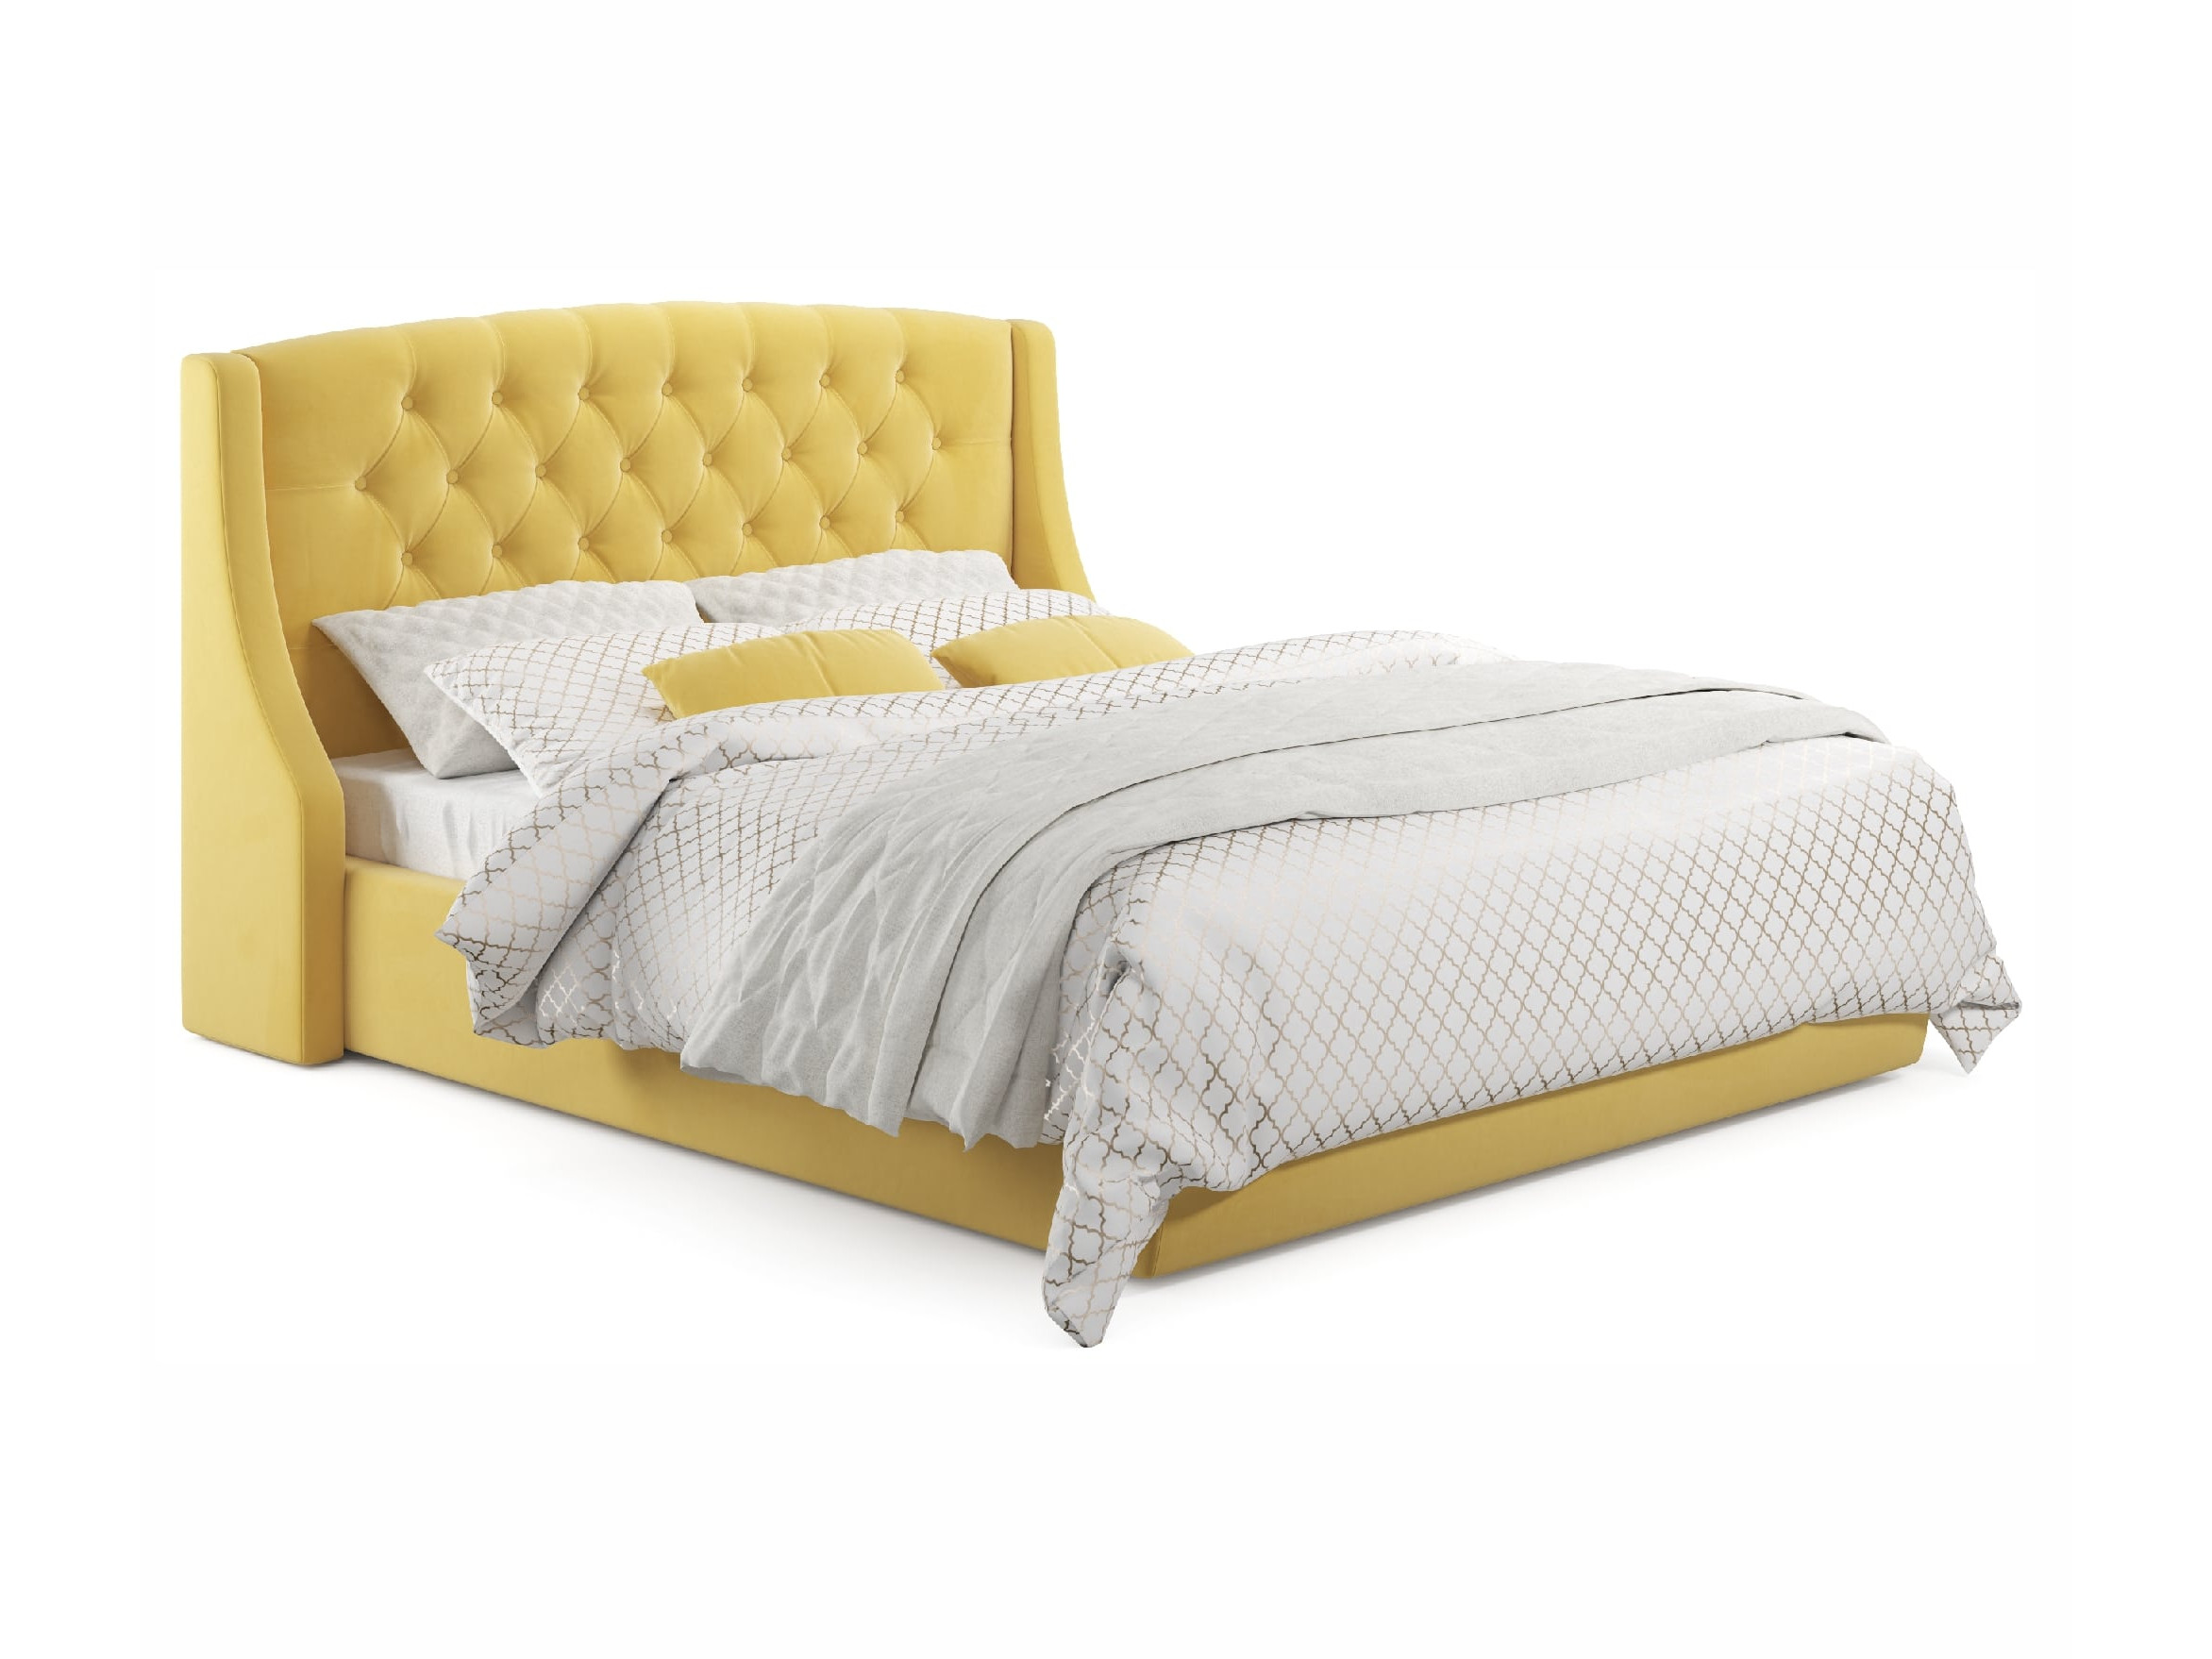 Мягкая кровать Stefani 1400 желтая с подъемным механизмо мягкая кровать stefani 1400 желтая с подъемным механизмом желтый желтый велюр дсп